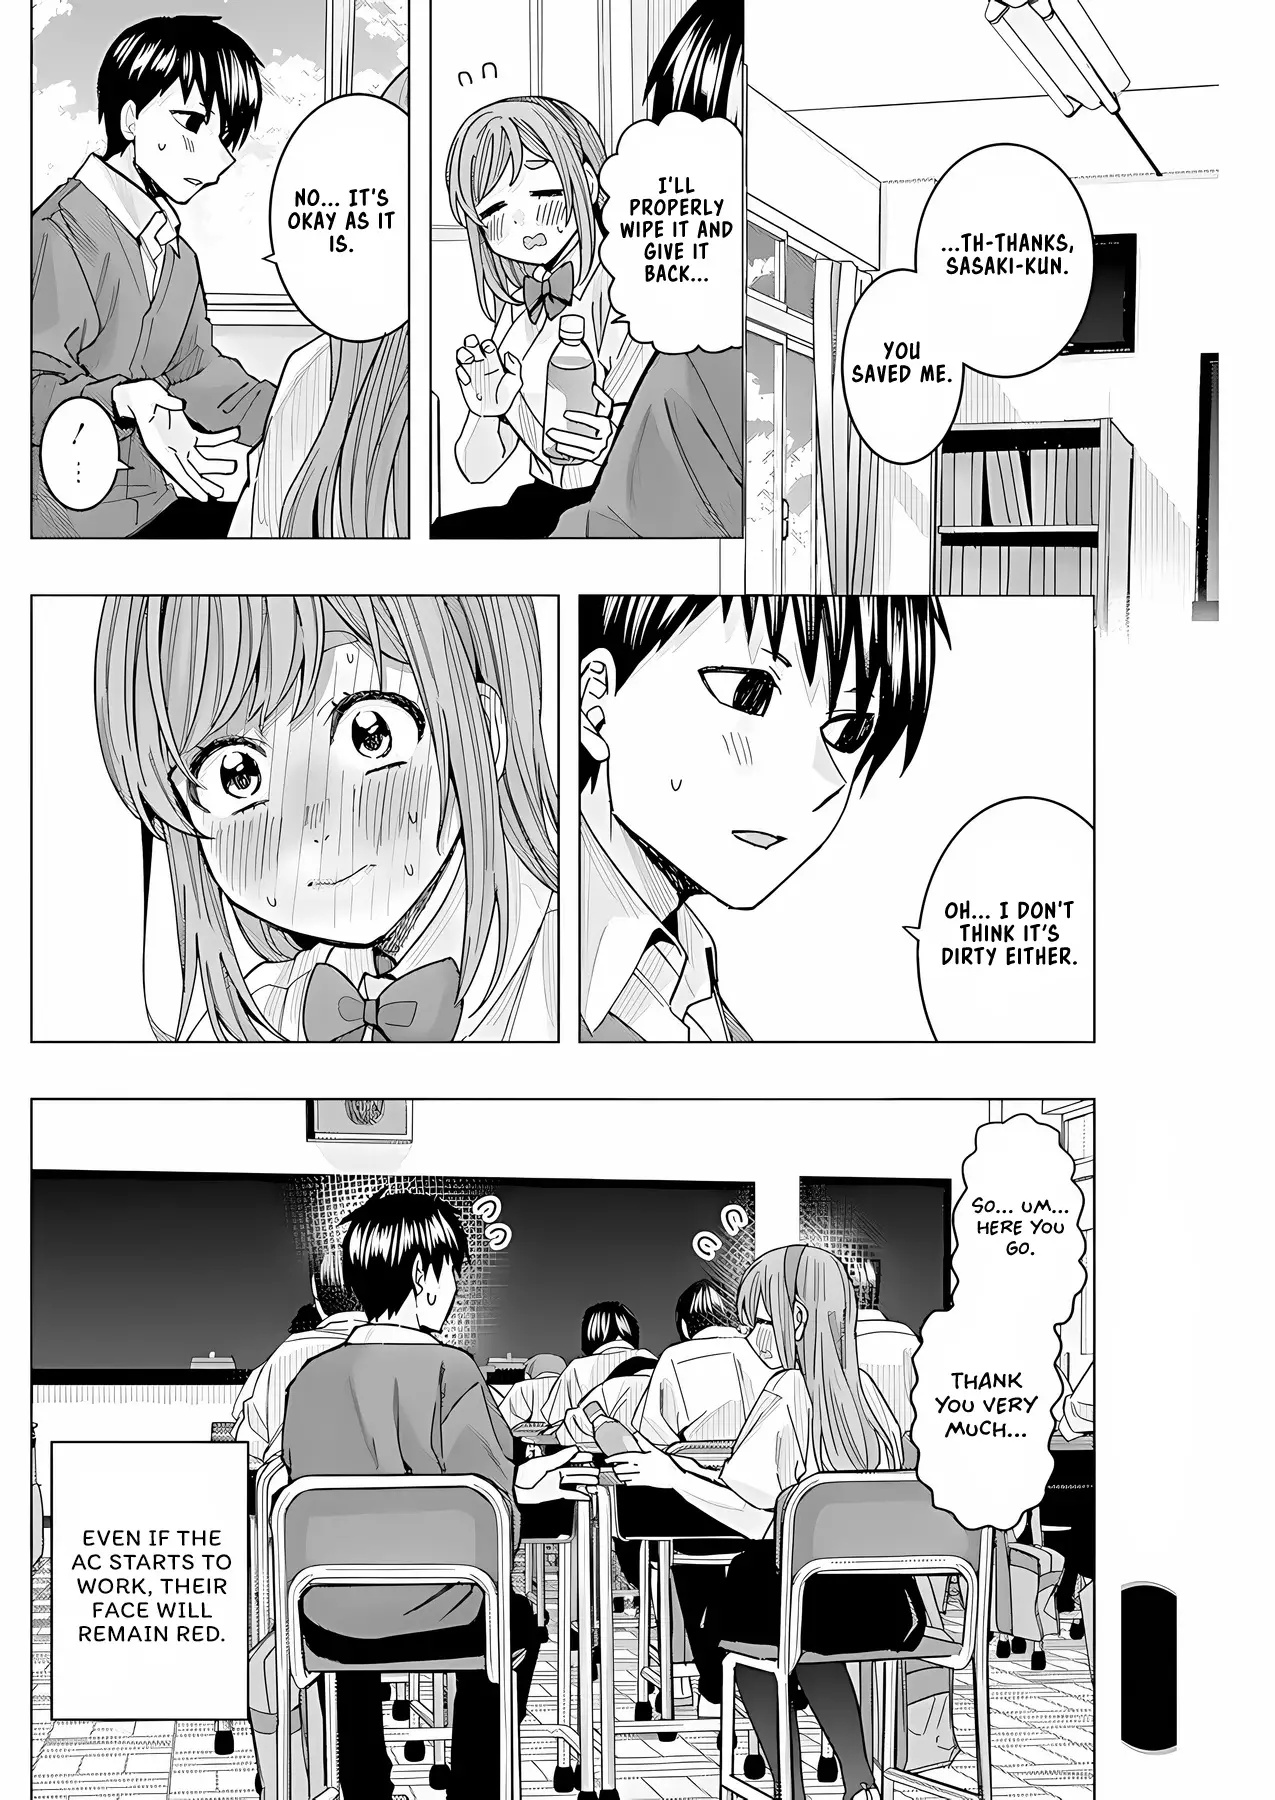 "nobukuni-San" Does She Like Me? - 26 page 15-e5b1a492